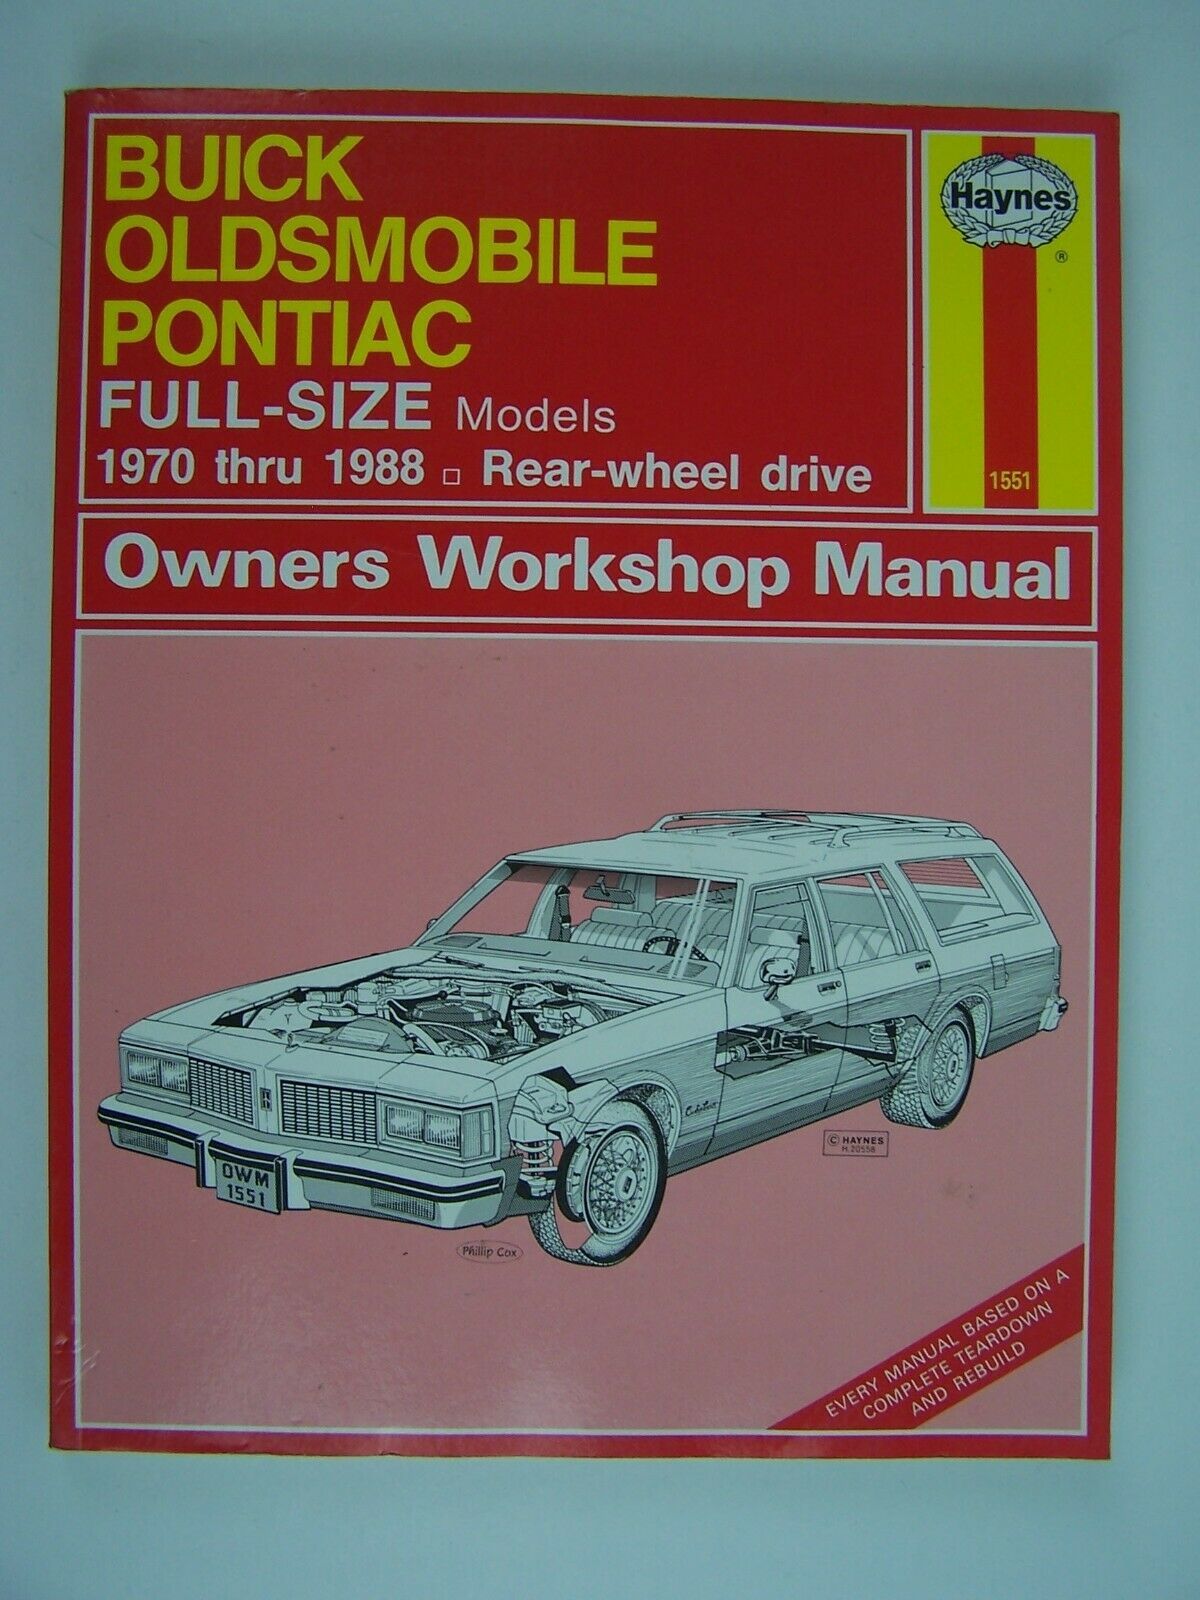 Buick, Oldsmobile, Pontiac Full-Size Models (RWD) Repair Manual 1970-1988 #1551 - $12.86